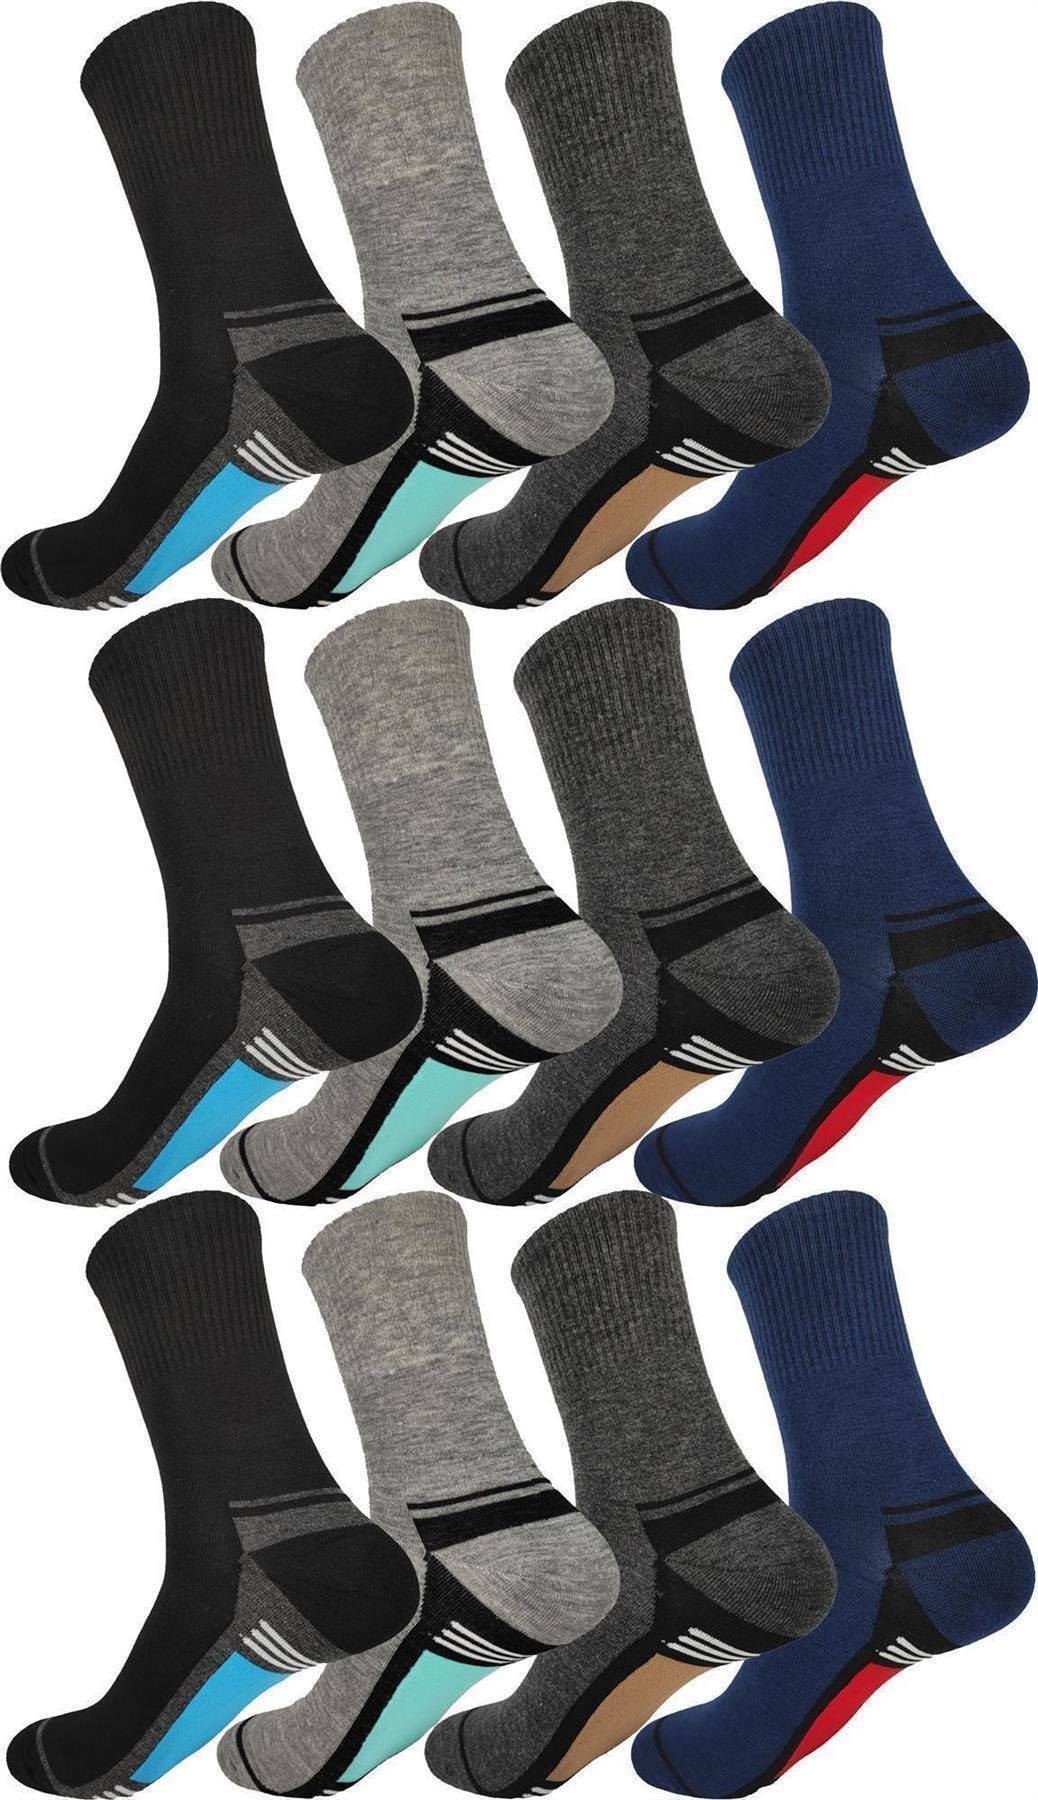 EloModa Basicsocken 12 Paar Herren Socken Muster klassischer Form Freizeit Sport (12-Paar)